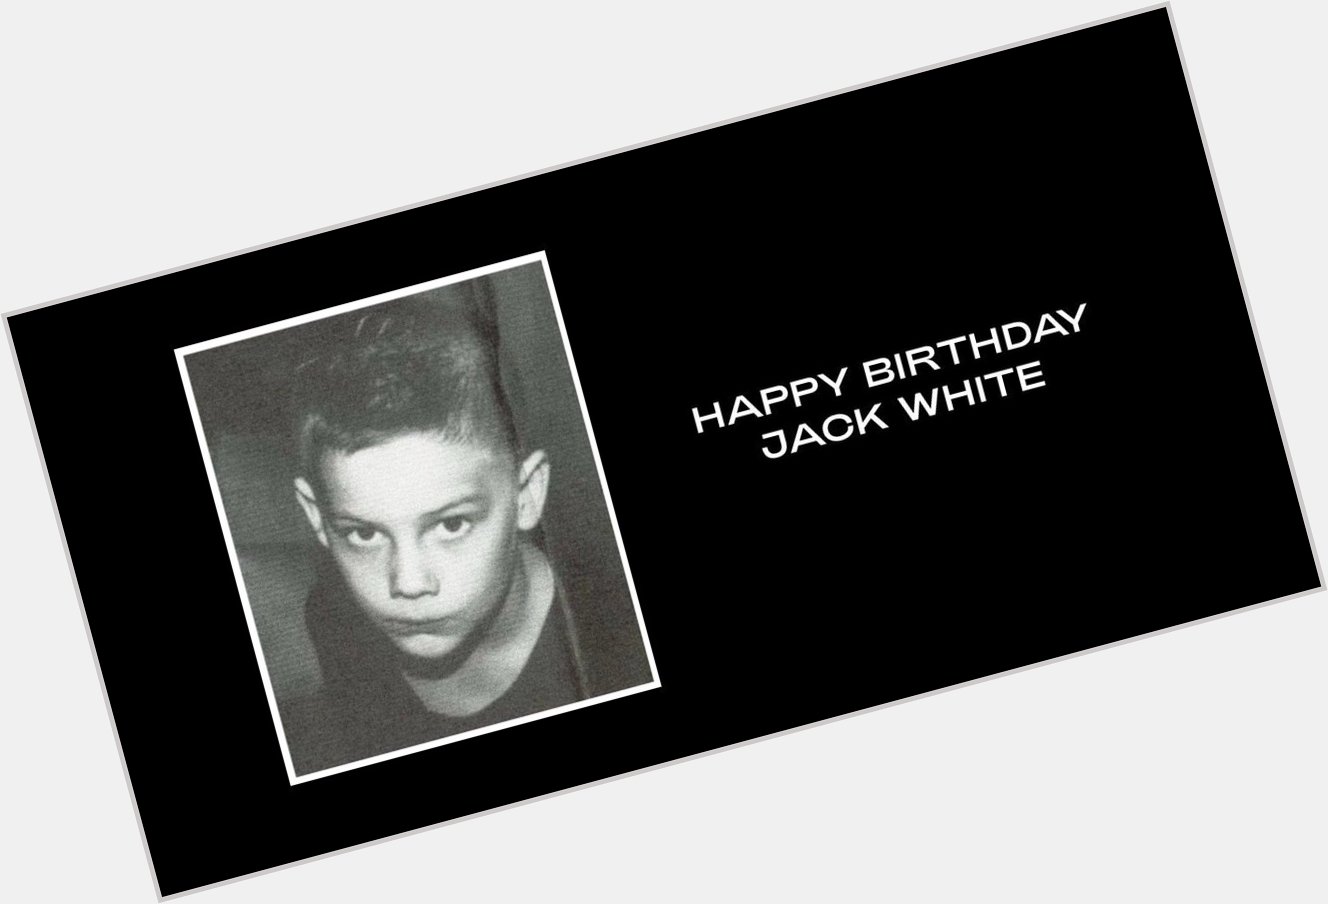 Happy Birthday Jack White! via  